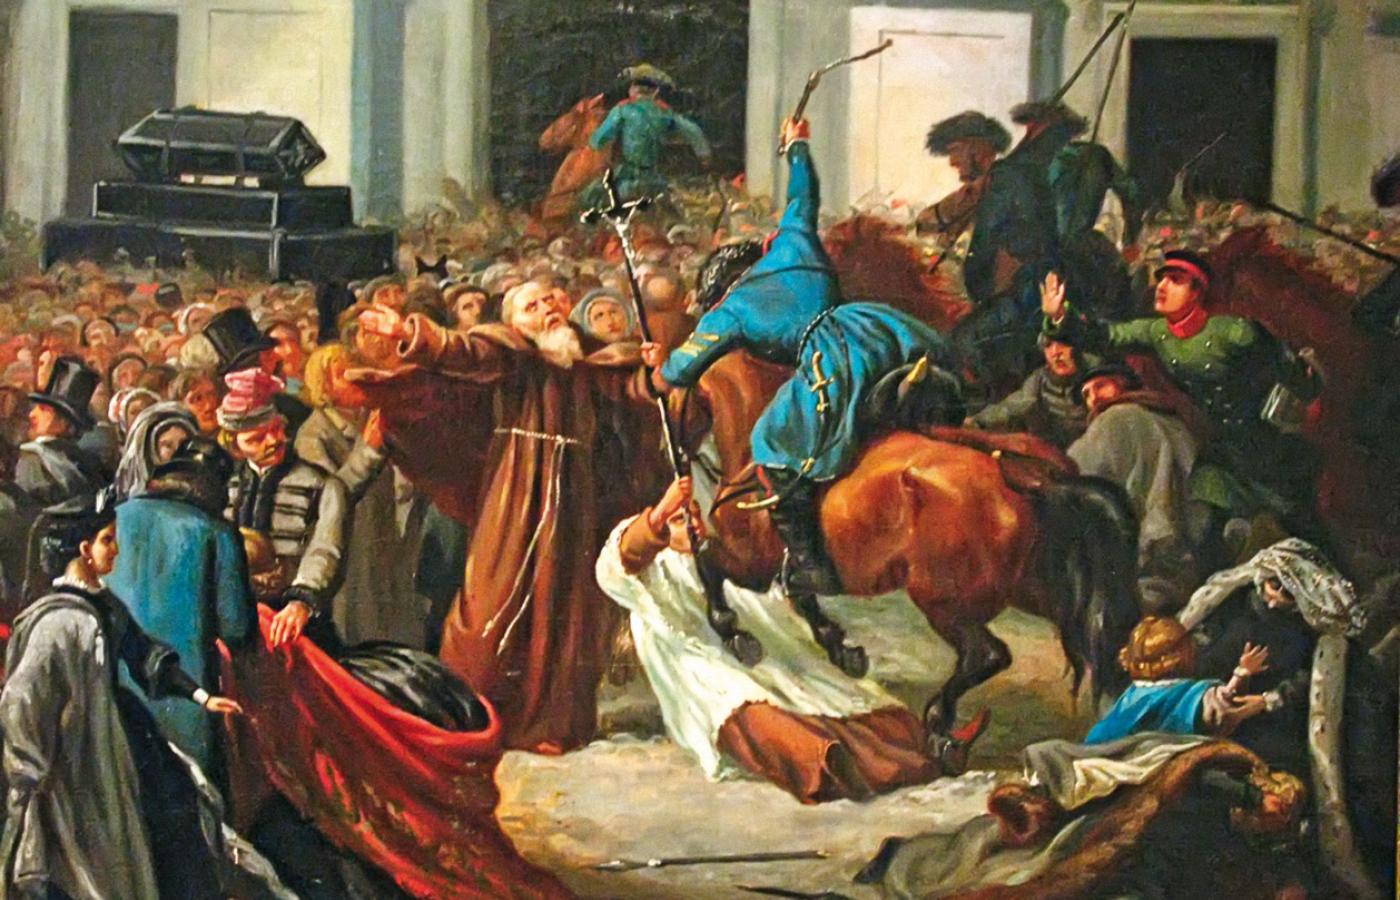 Demonstracja patriotyczna zaatakowana przez kozaków 27 lutego 1861 r., obraz olejny nieznanego artysty z XIX w.